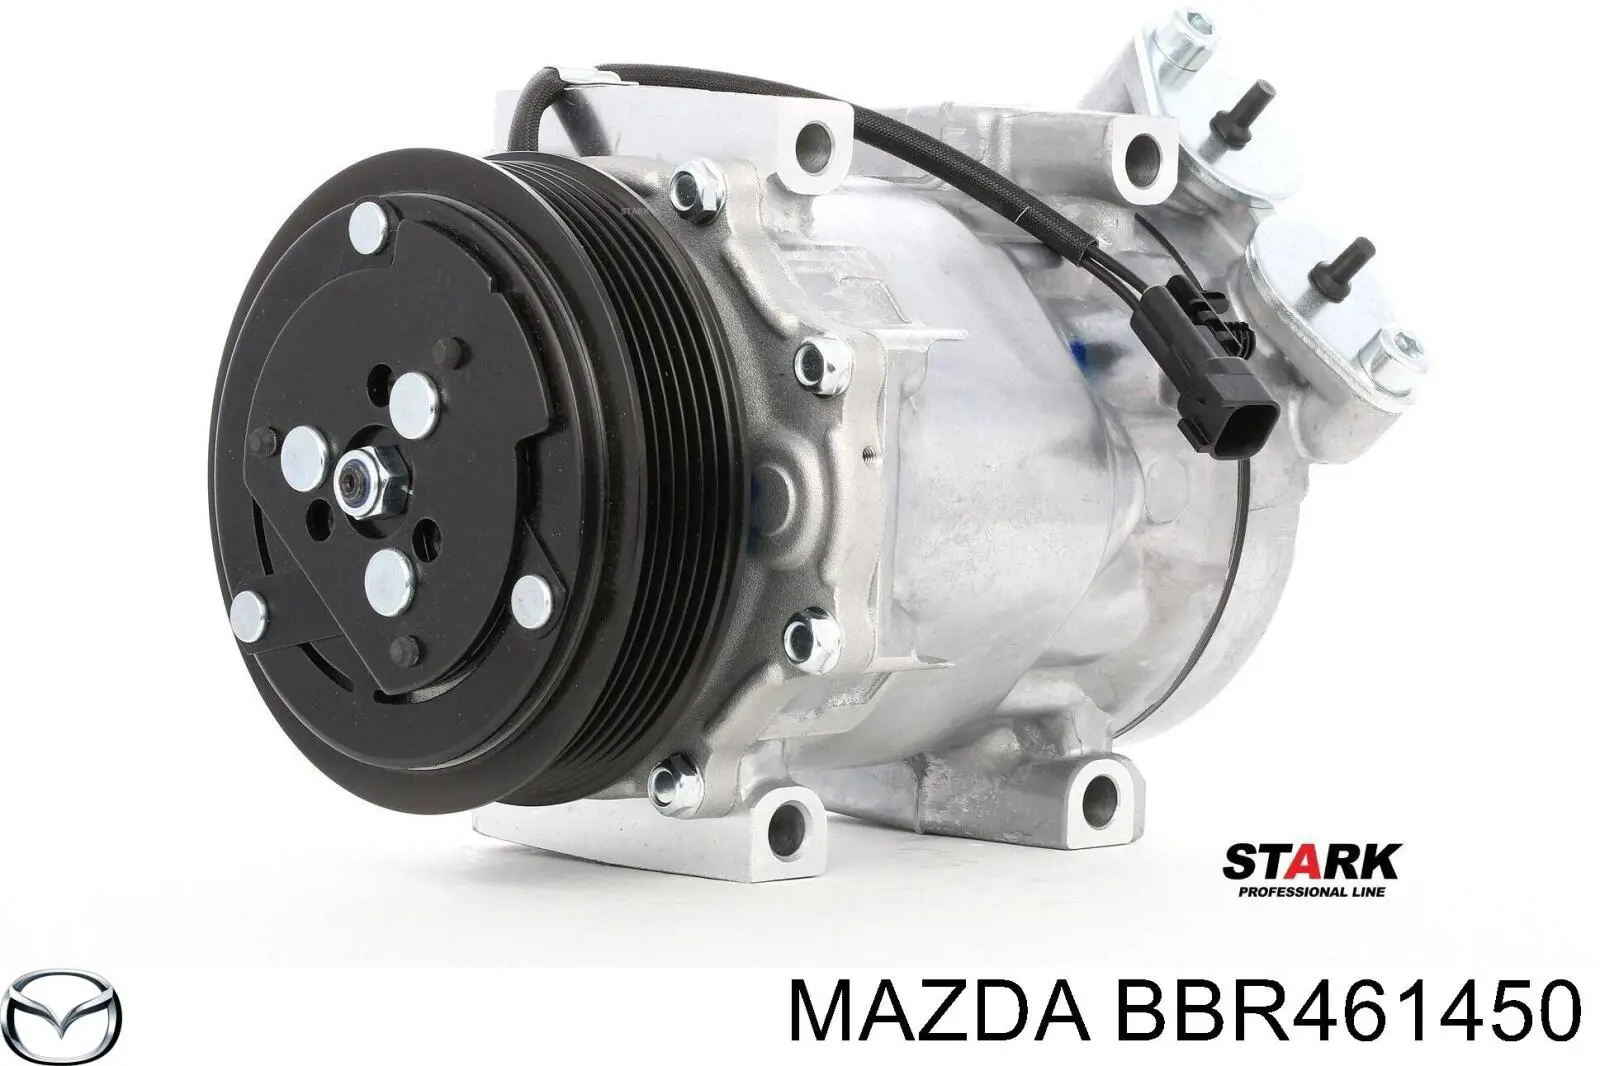 BBR461450 Mazda compresor de aire acondicionado